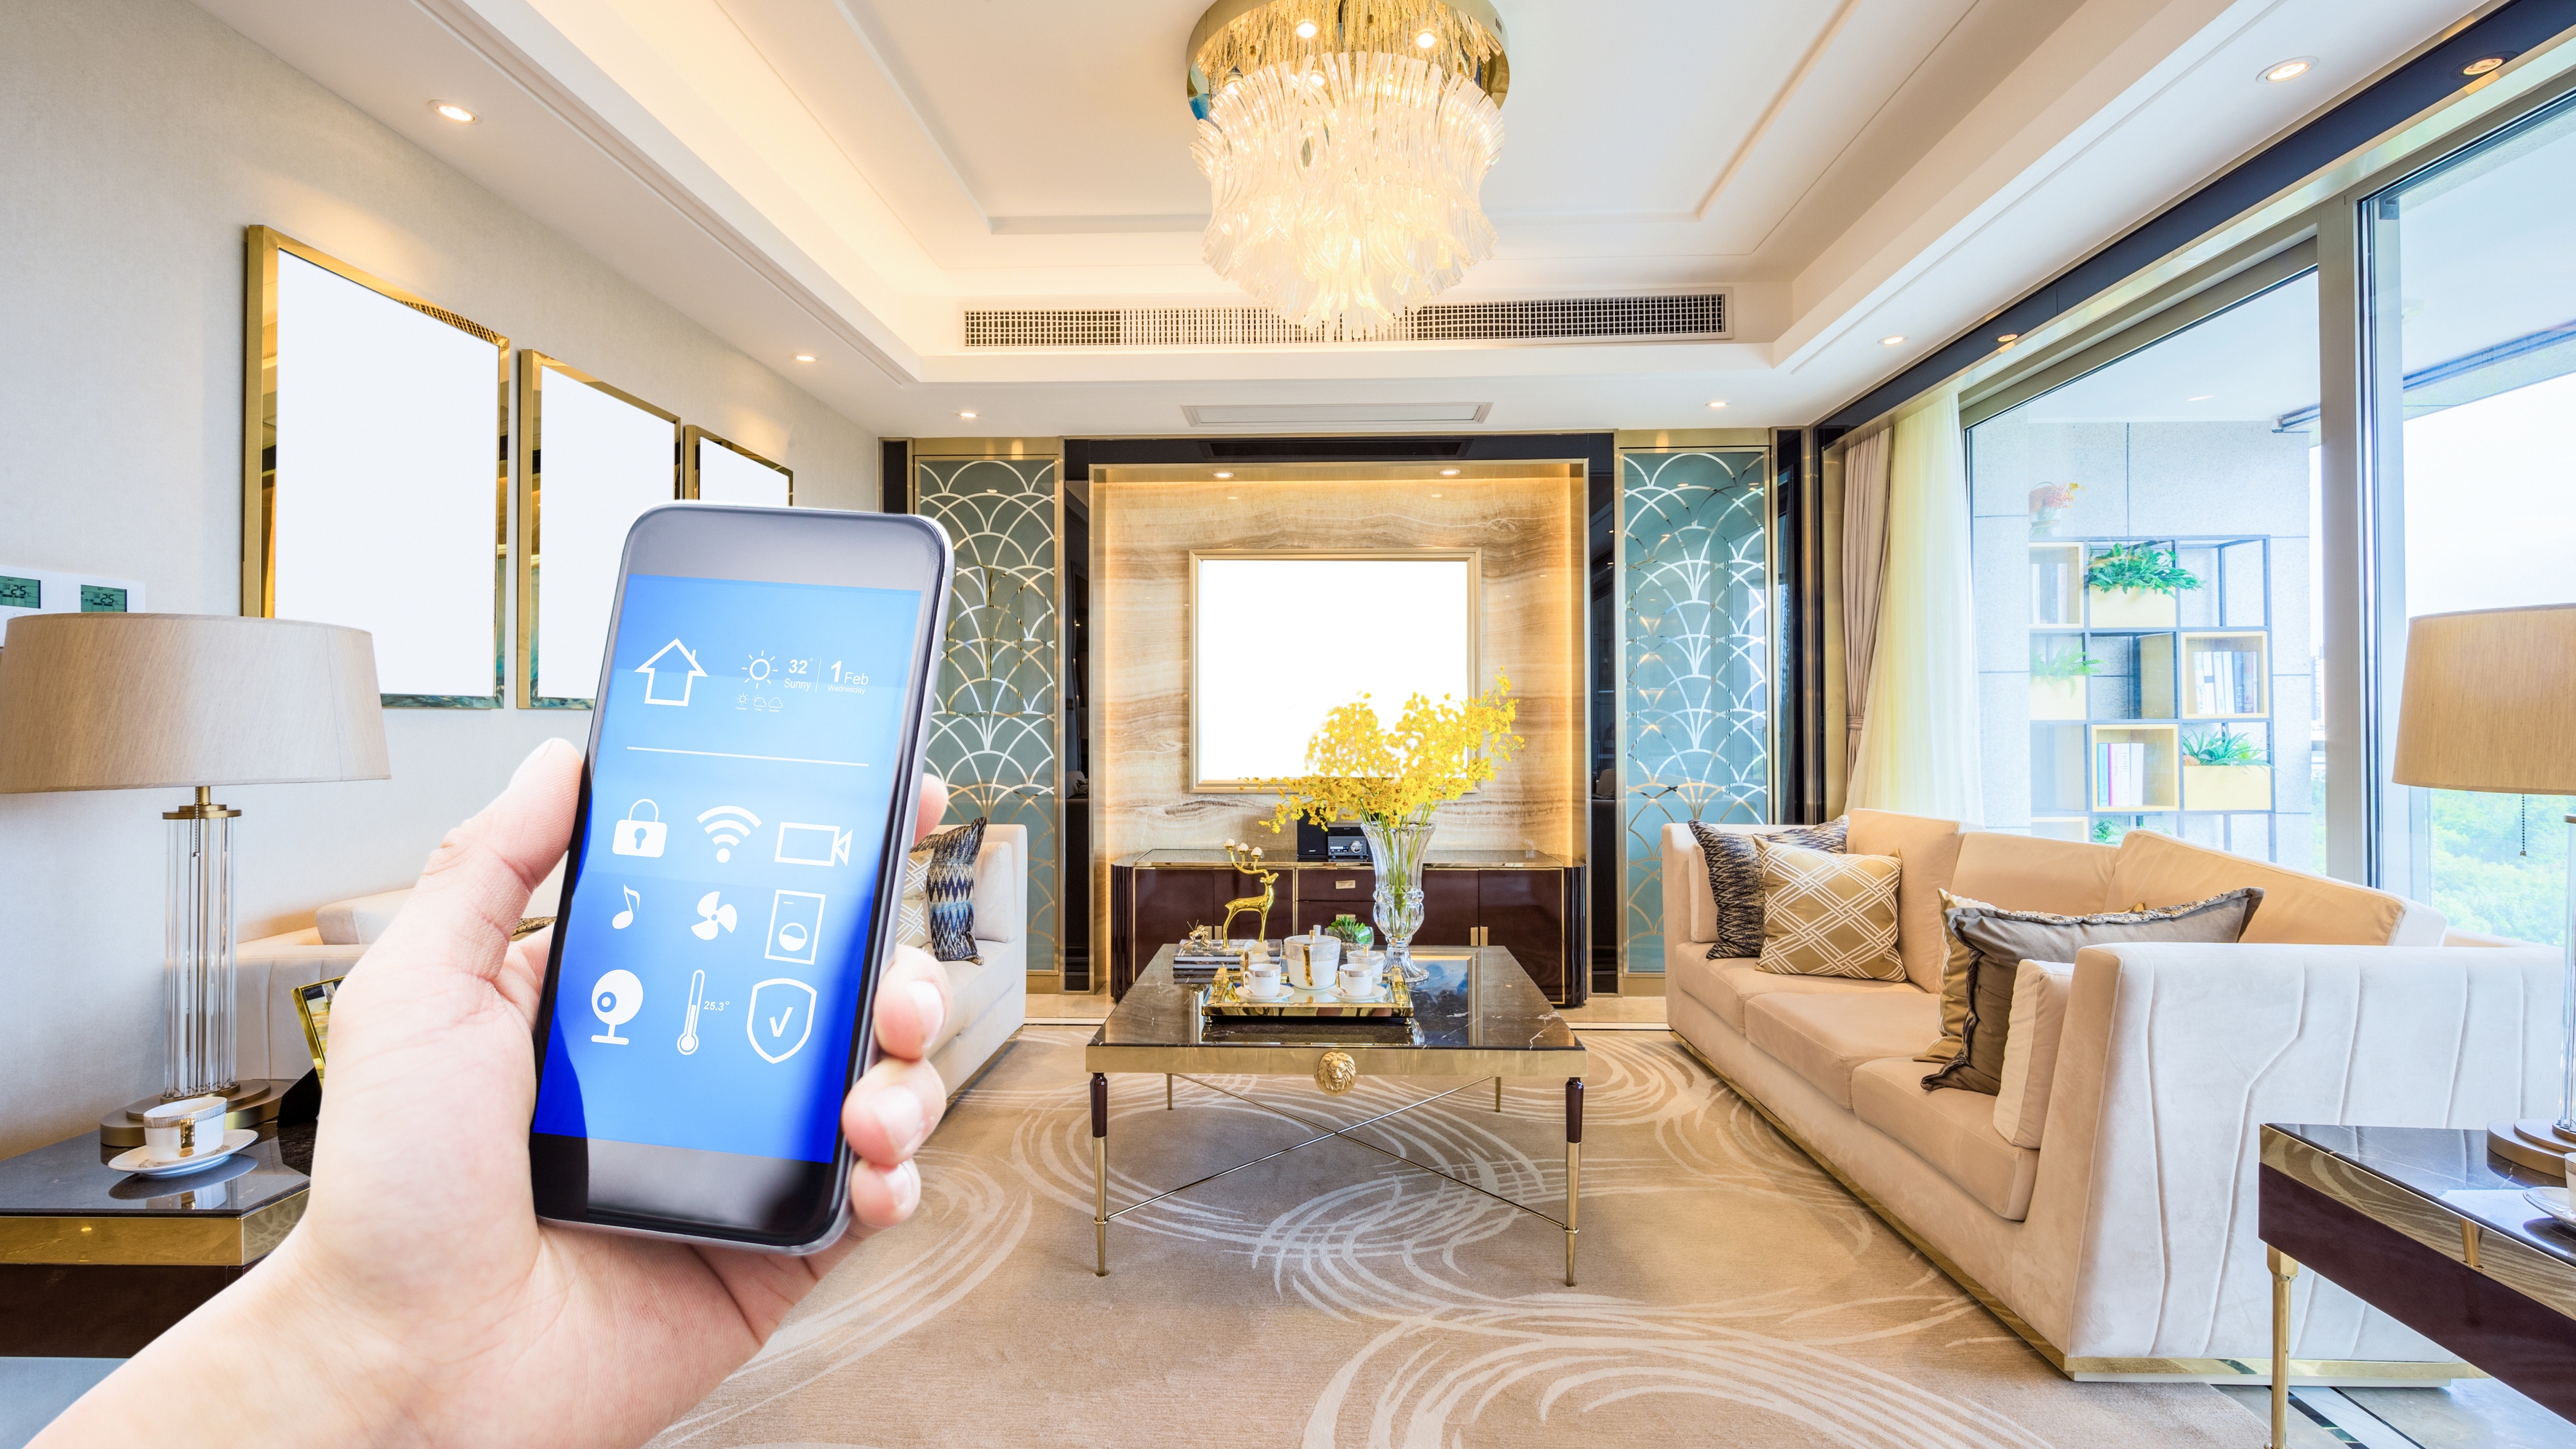 Une maison intelligente moderne avec des appareils connectés tels que des caméras de sécurité et des thermostats contrôlés sans fil à partir d'appareils mobiles